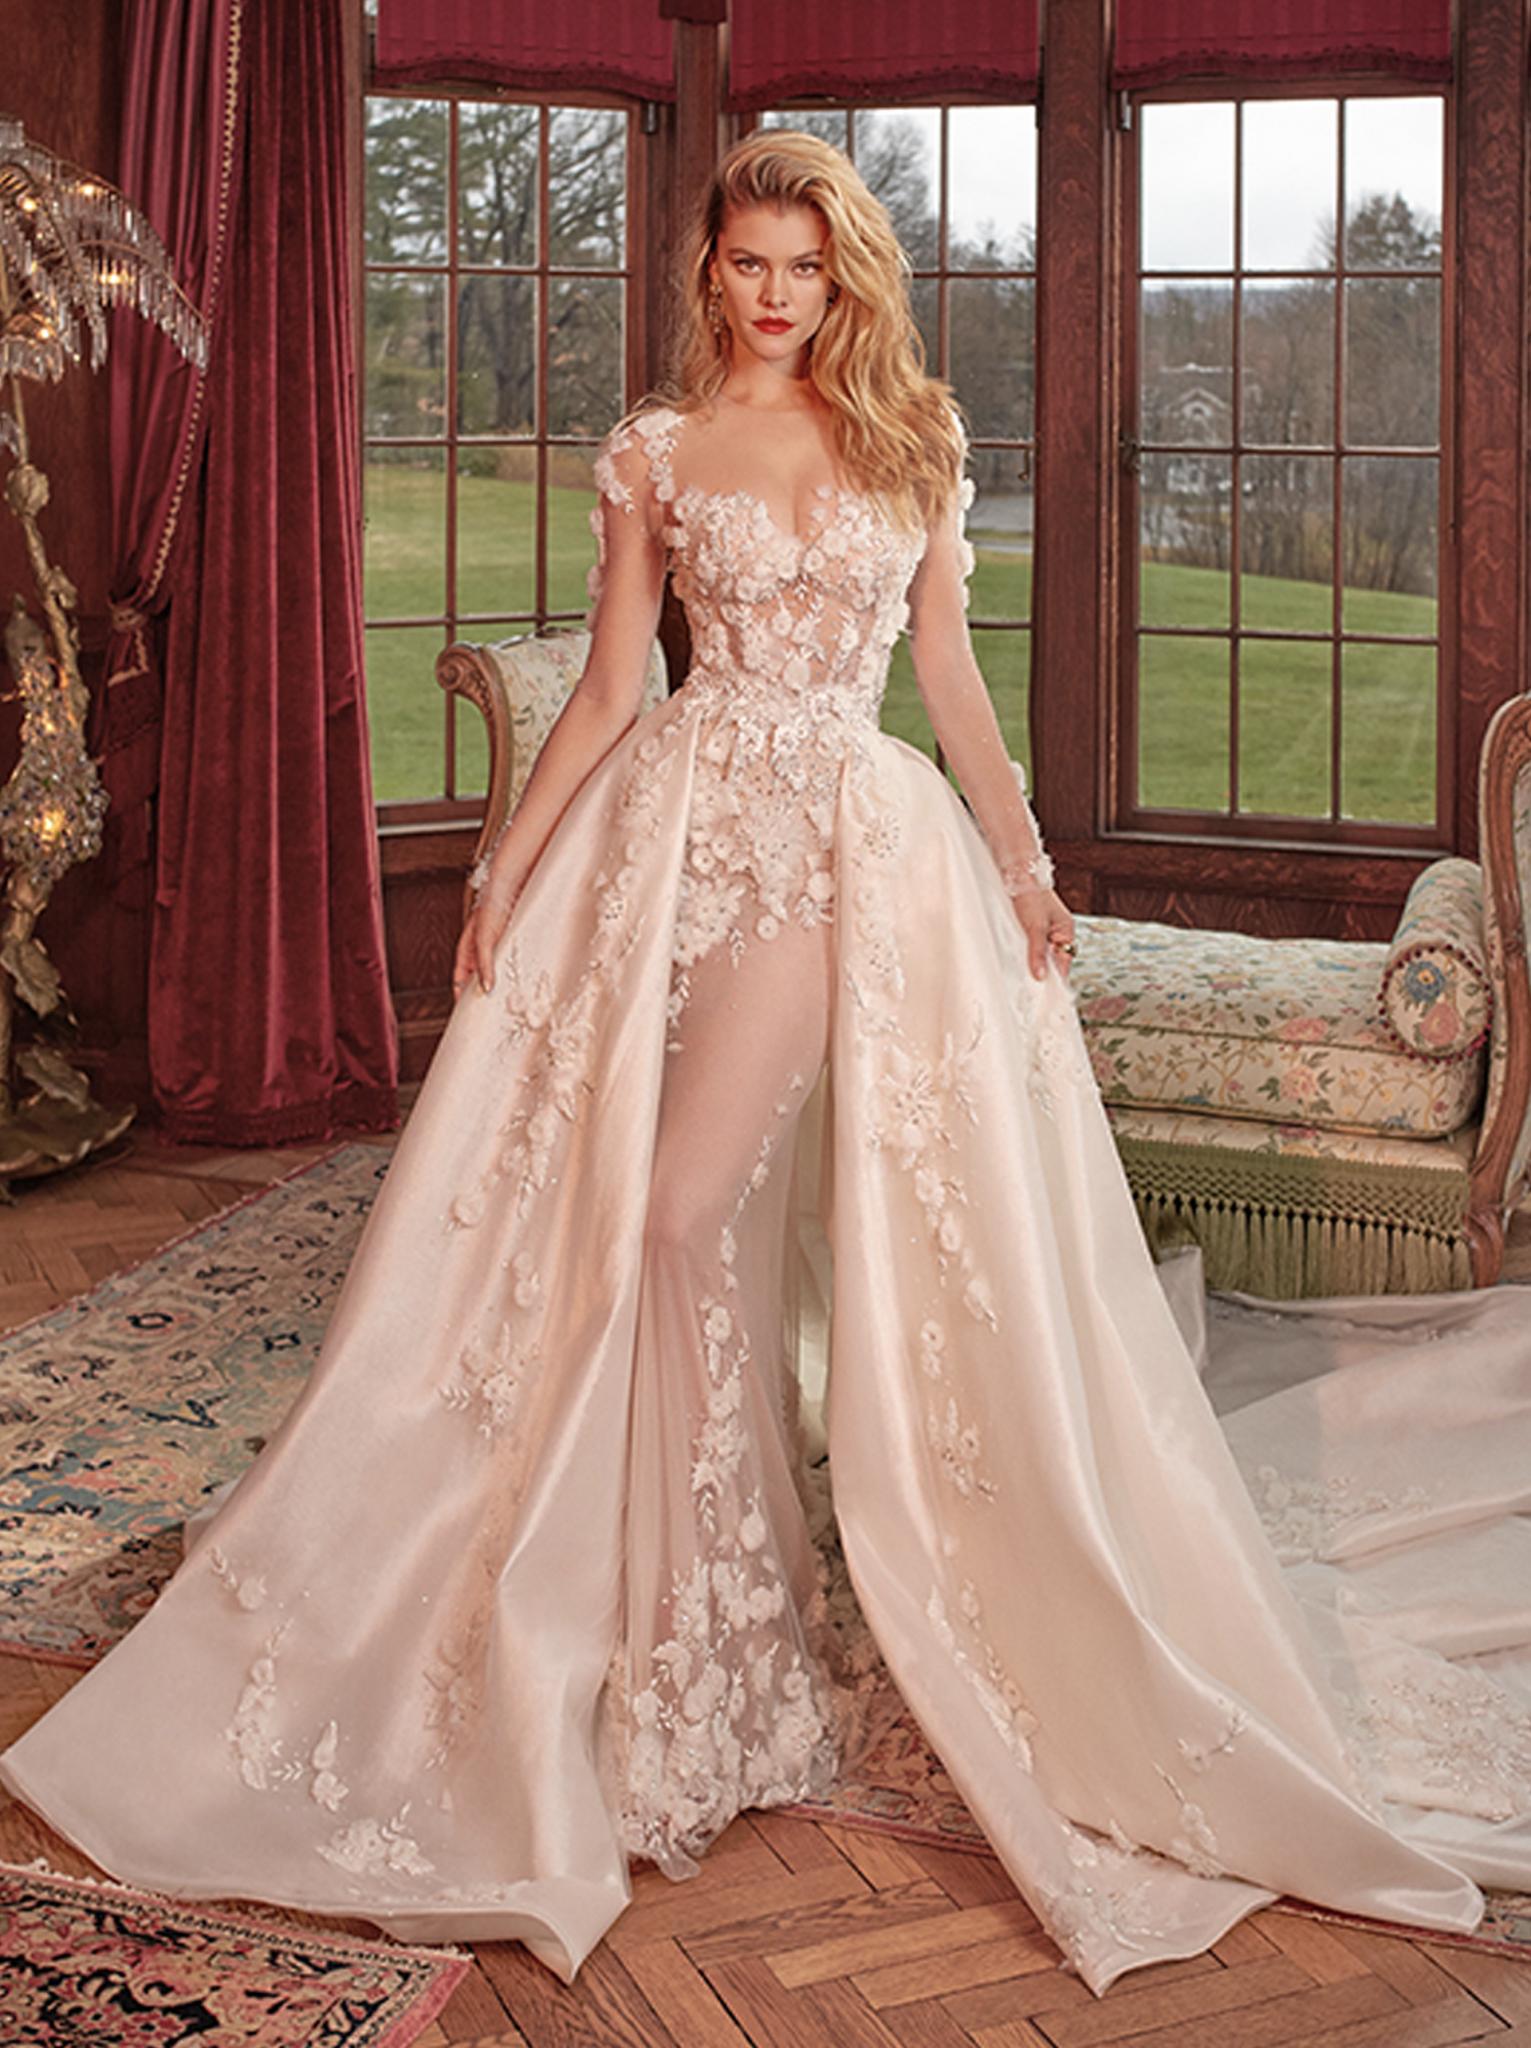 Rhiannon   Queen of Hearts   Bridal Dresses   Galia Lahav